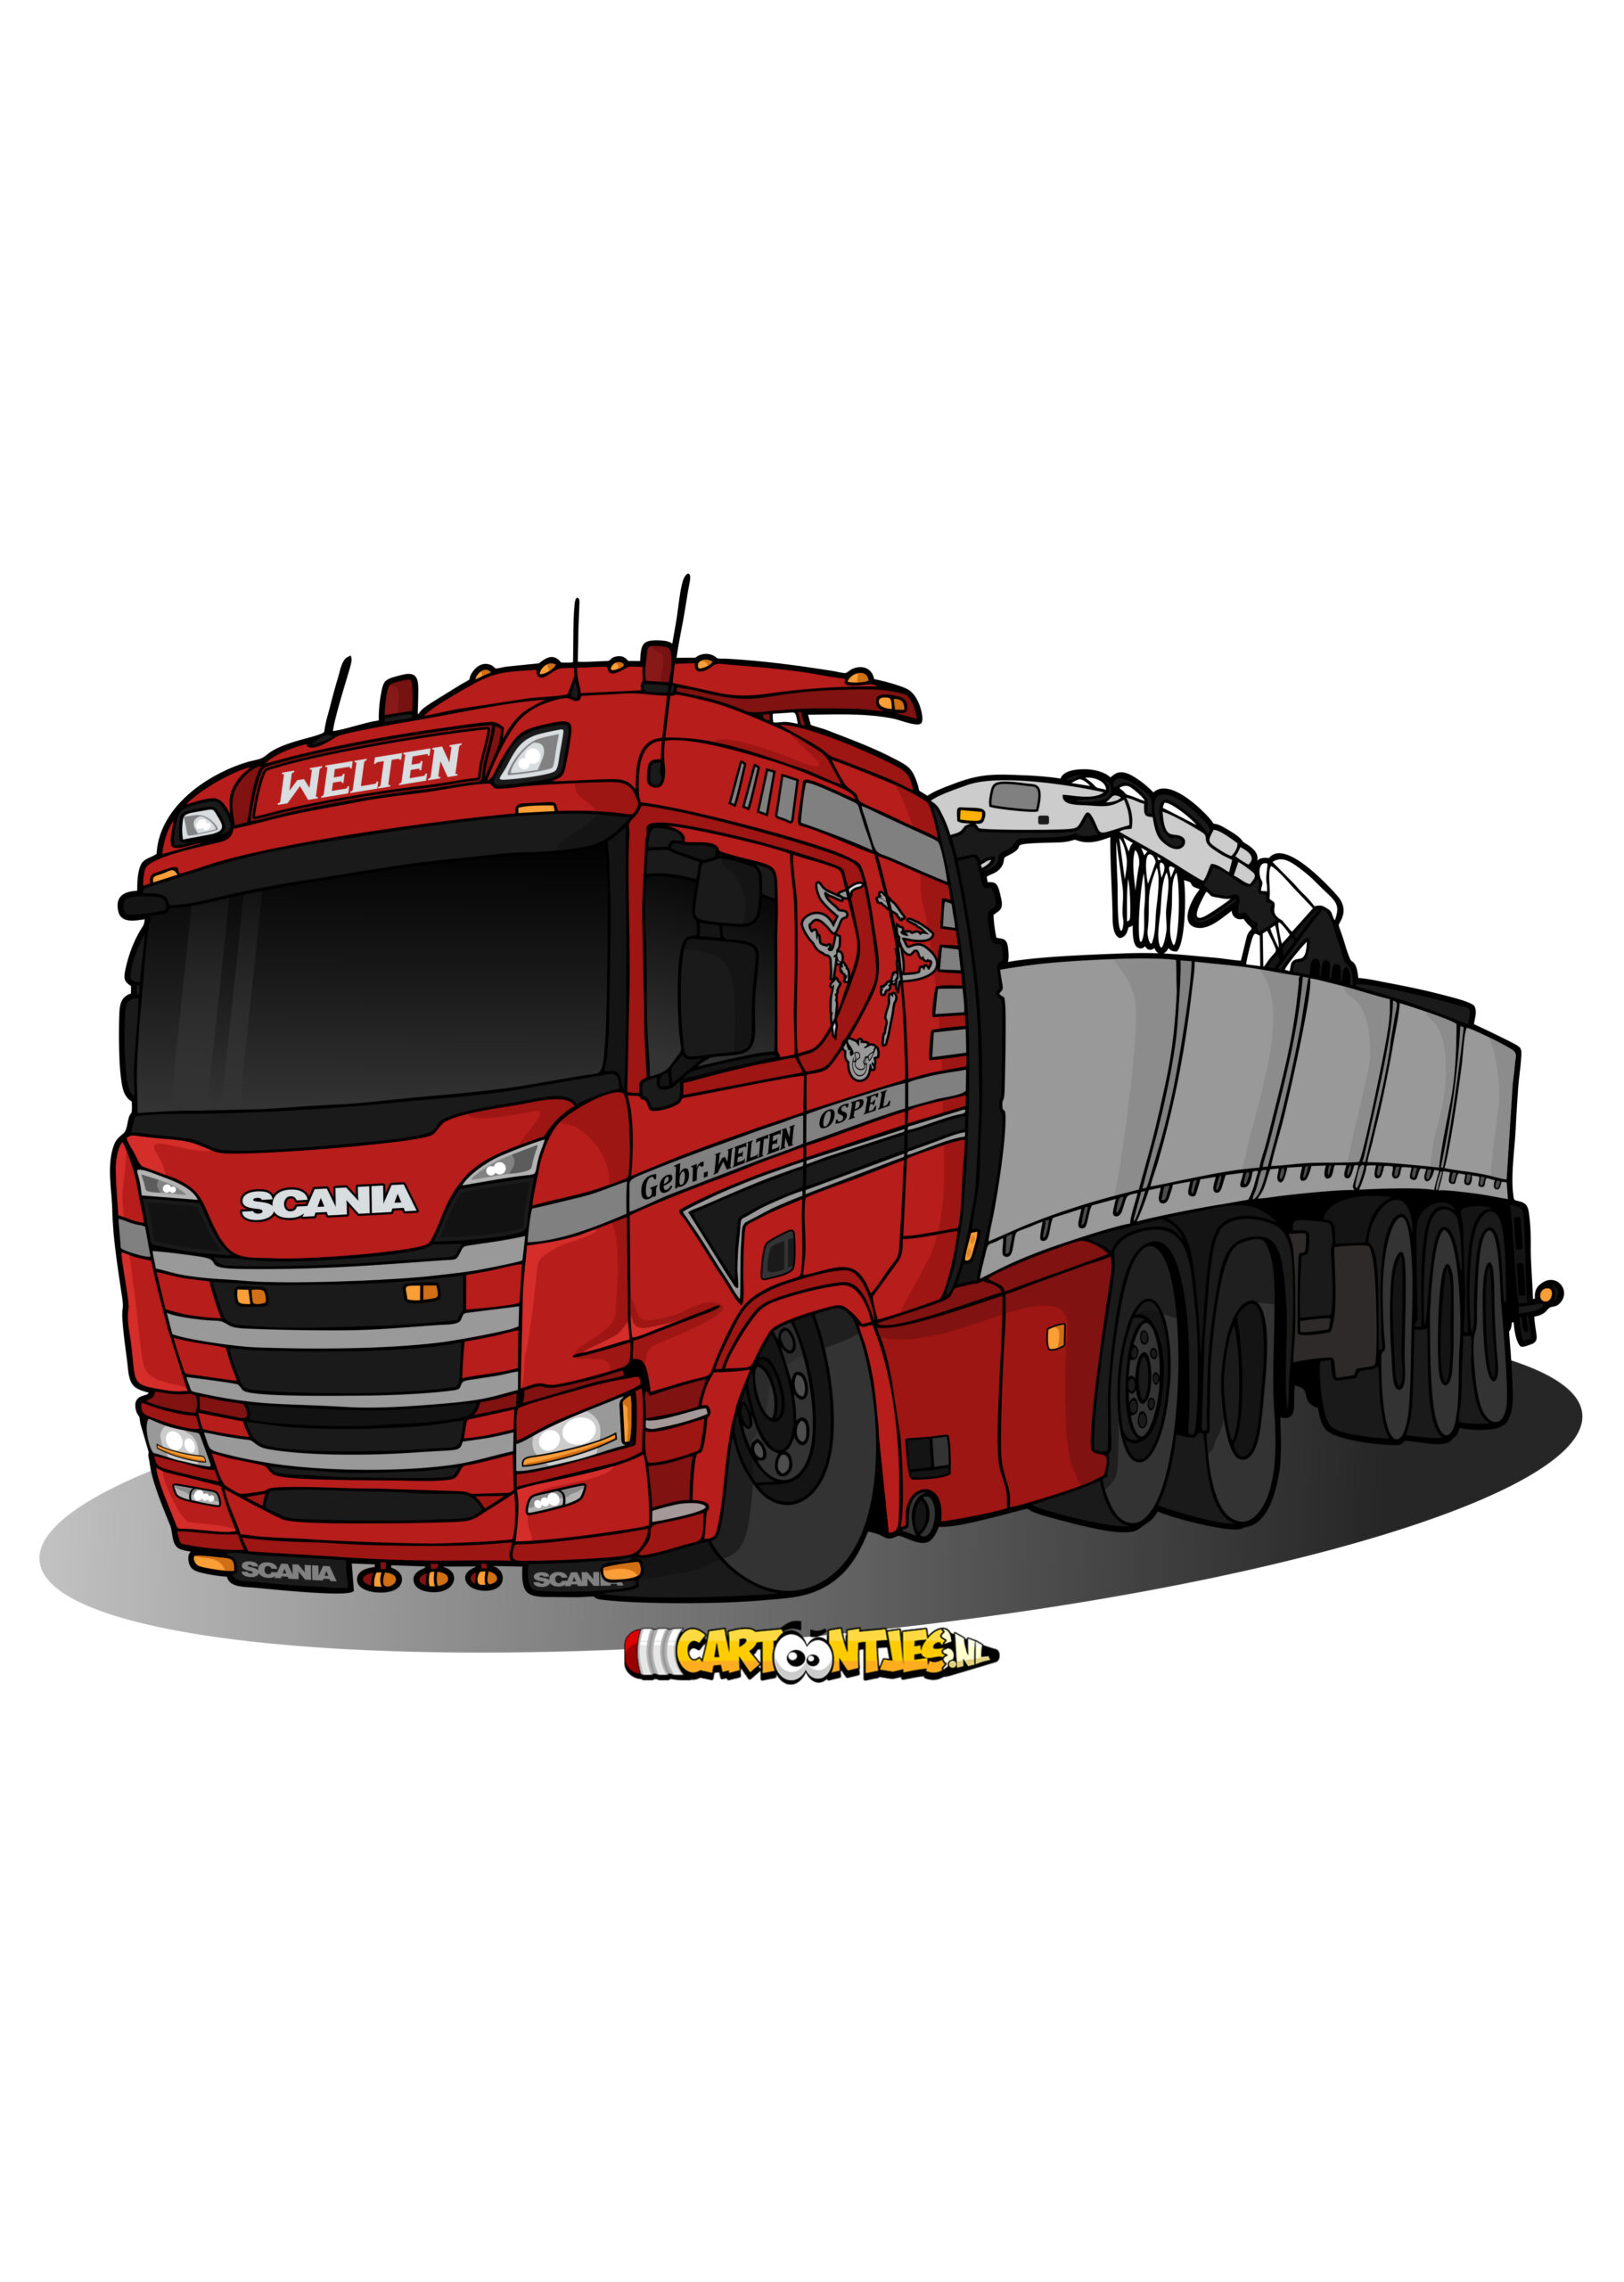 truck-cartoon-welten-transport